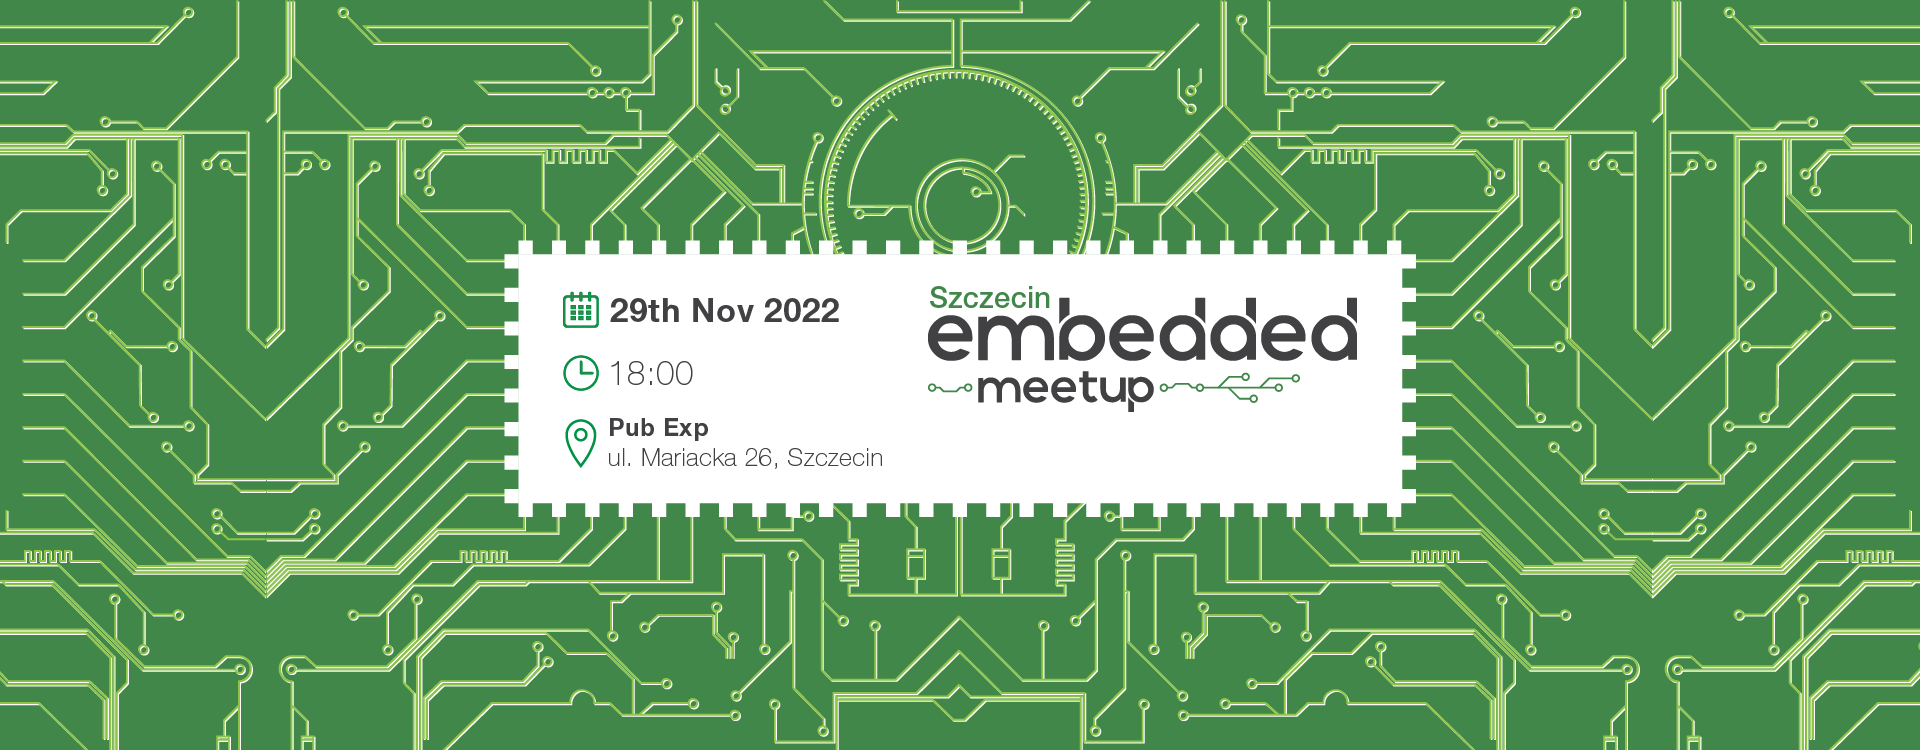 embeddedmeetupwszczecinie • itweek.pl - nowy serwis informacyjny dla IT